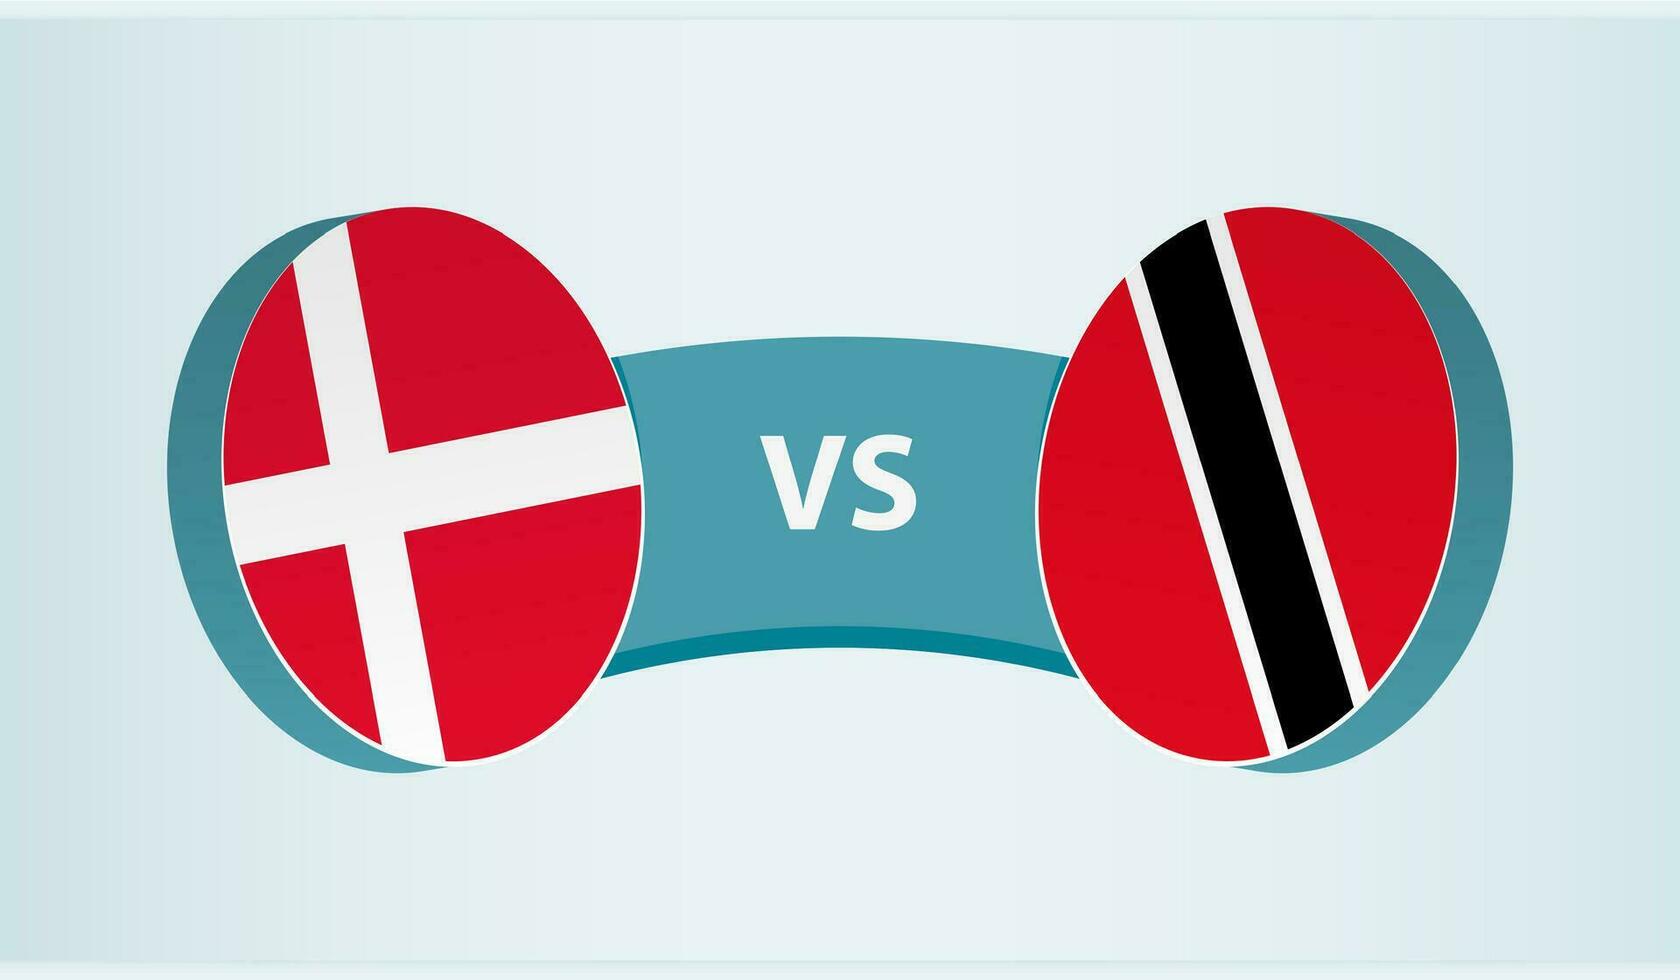 Denmark versus Trinidad and Tobago, team sports competition concept. vector